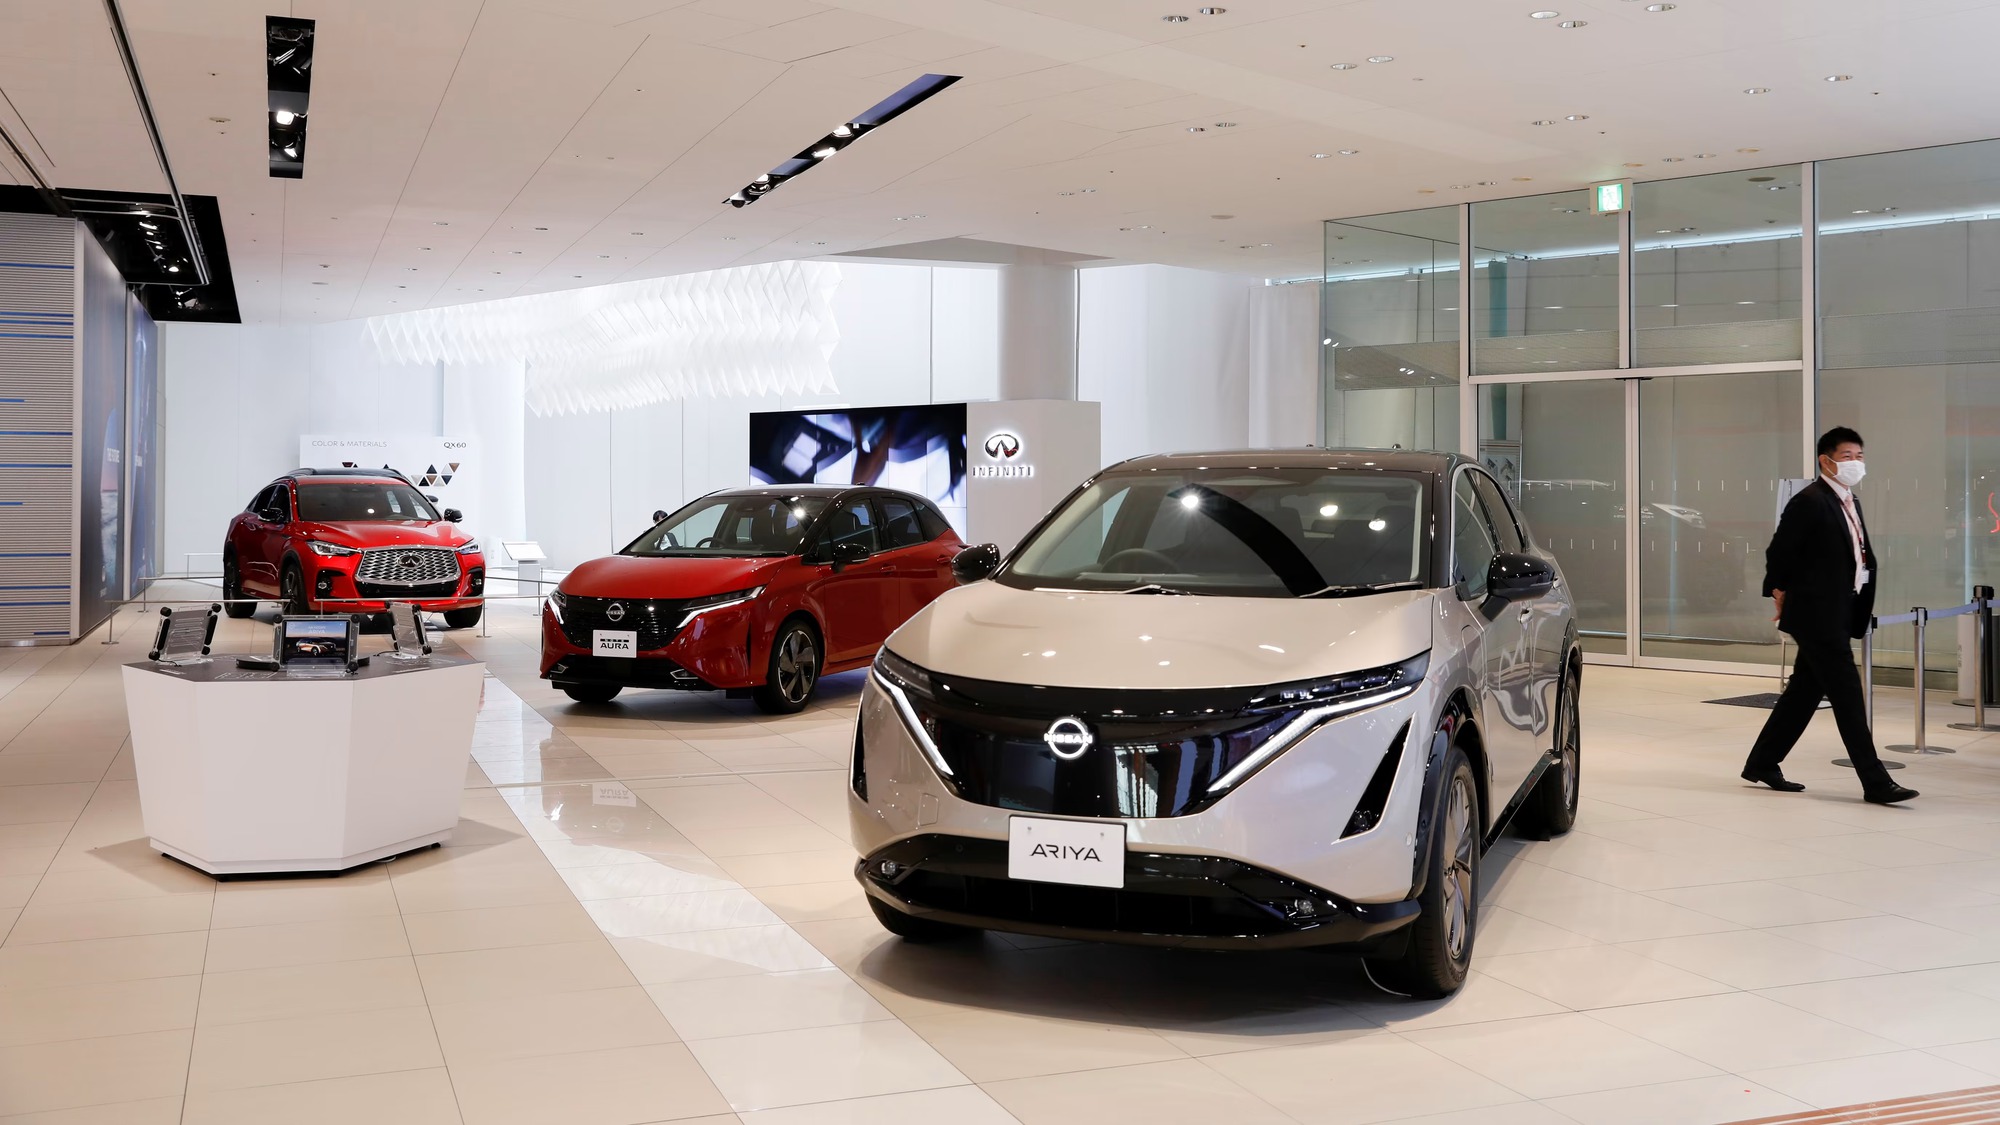 Nissan đã hạ dự báo doanh số bán hàng của mình 300.000 chiếc, xuống còn 3,4 triệu chiếc, với lý do môi trường kinh doanh đầy thách thức do phong tỏa do Covid-19 ở Trung Quốc và nhu cầu thấp hơn dự kiến, cũng như tình trạng thiếu chip tiếp tục ở Bắc Mỹ. Ảnh: @AFP.